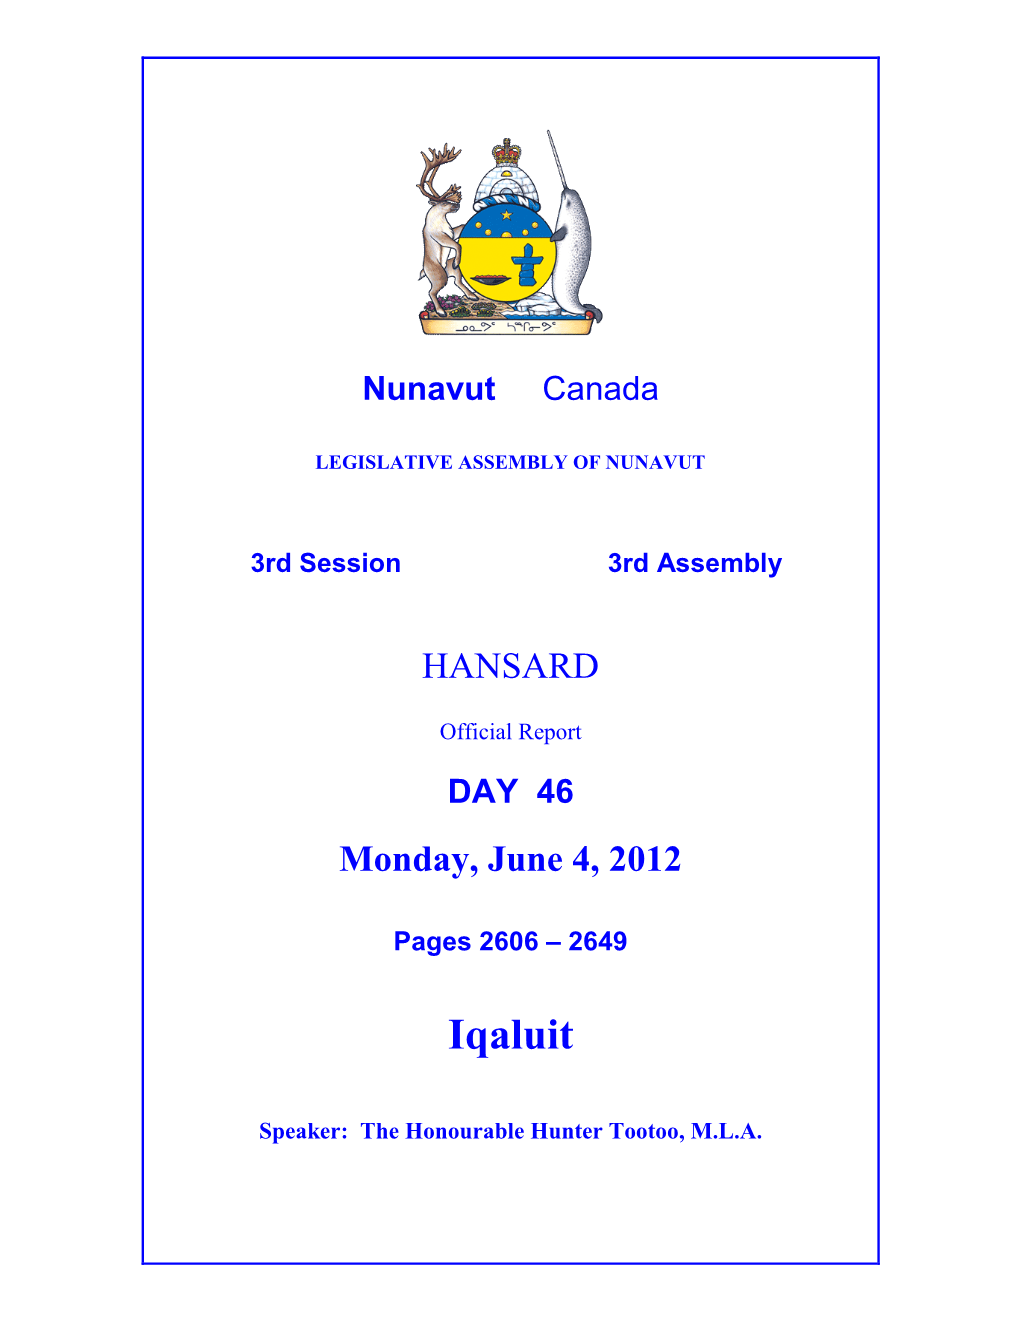 Nunavut Hansard 2606